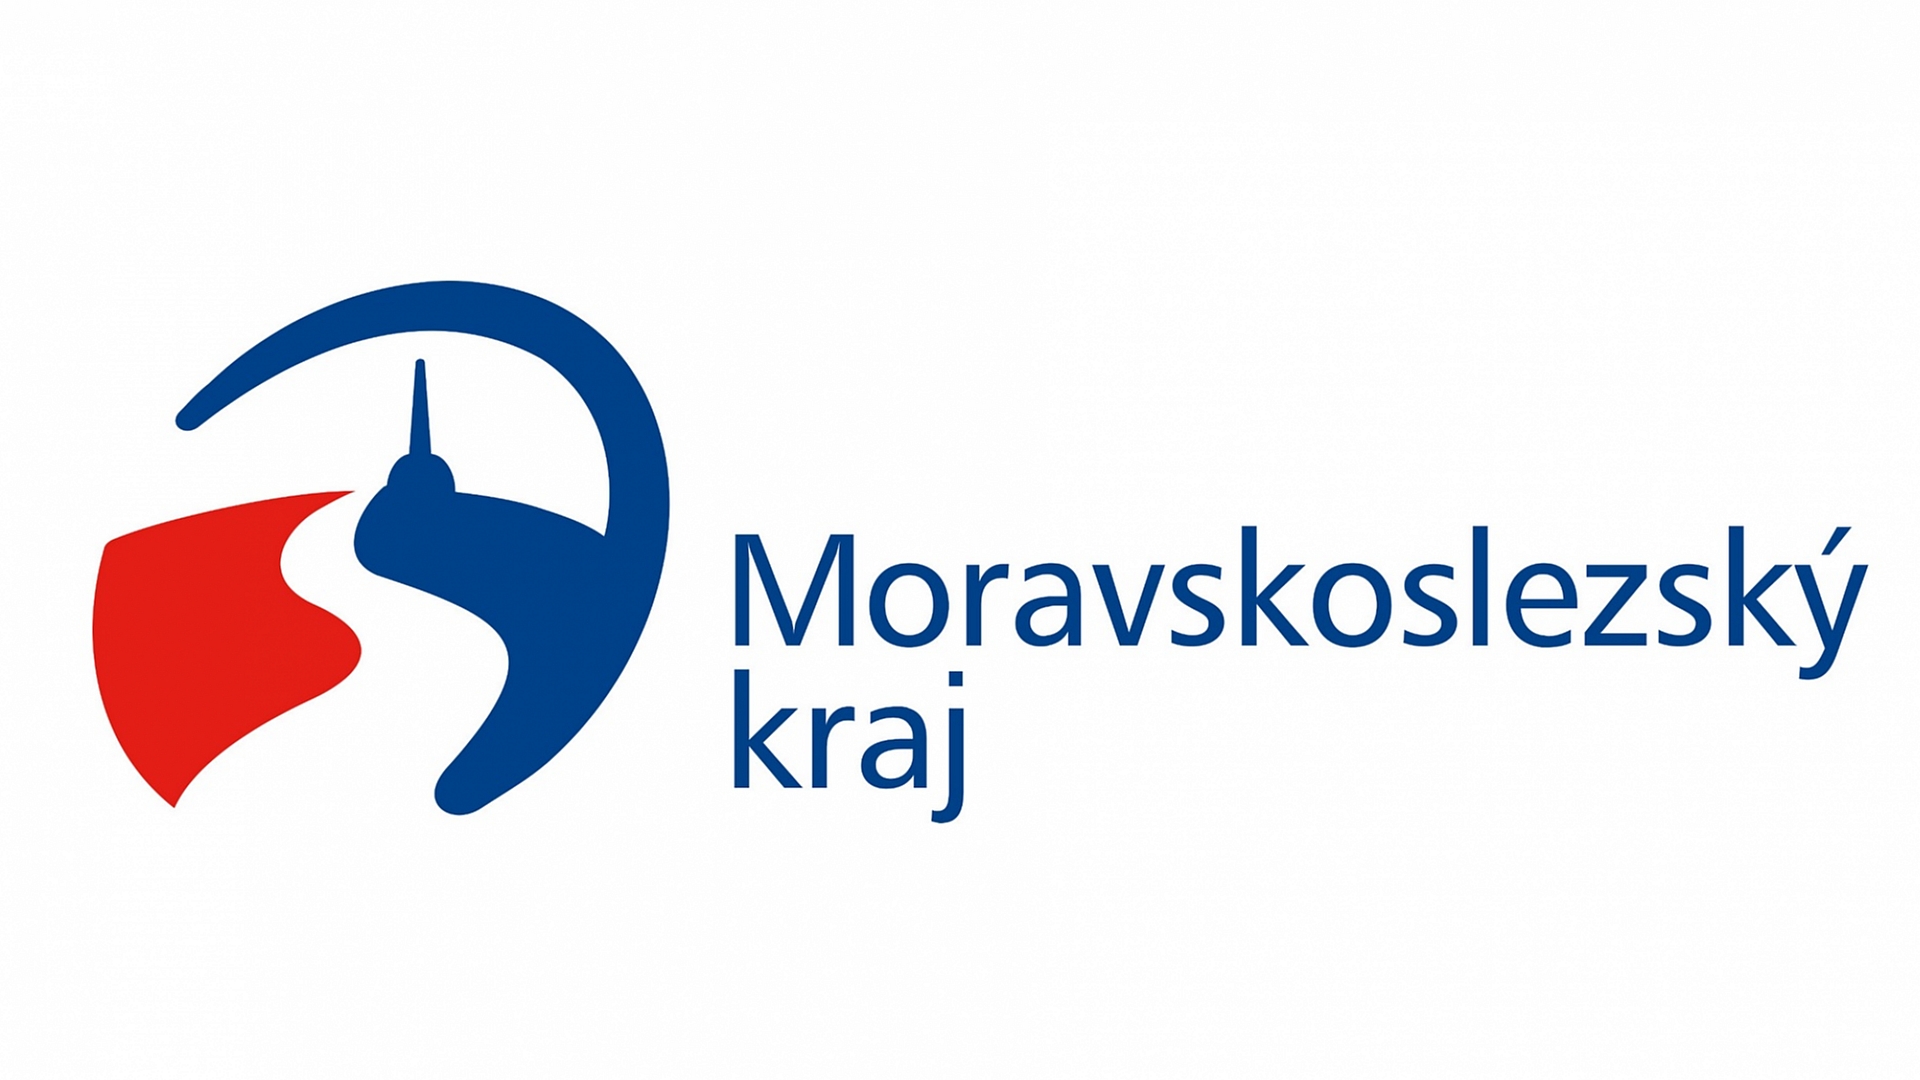 msk logo